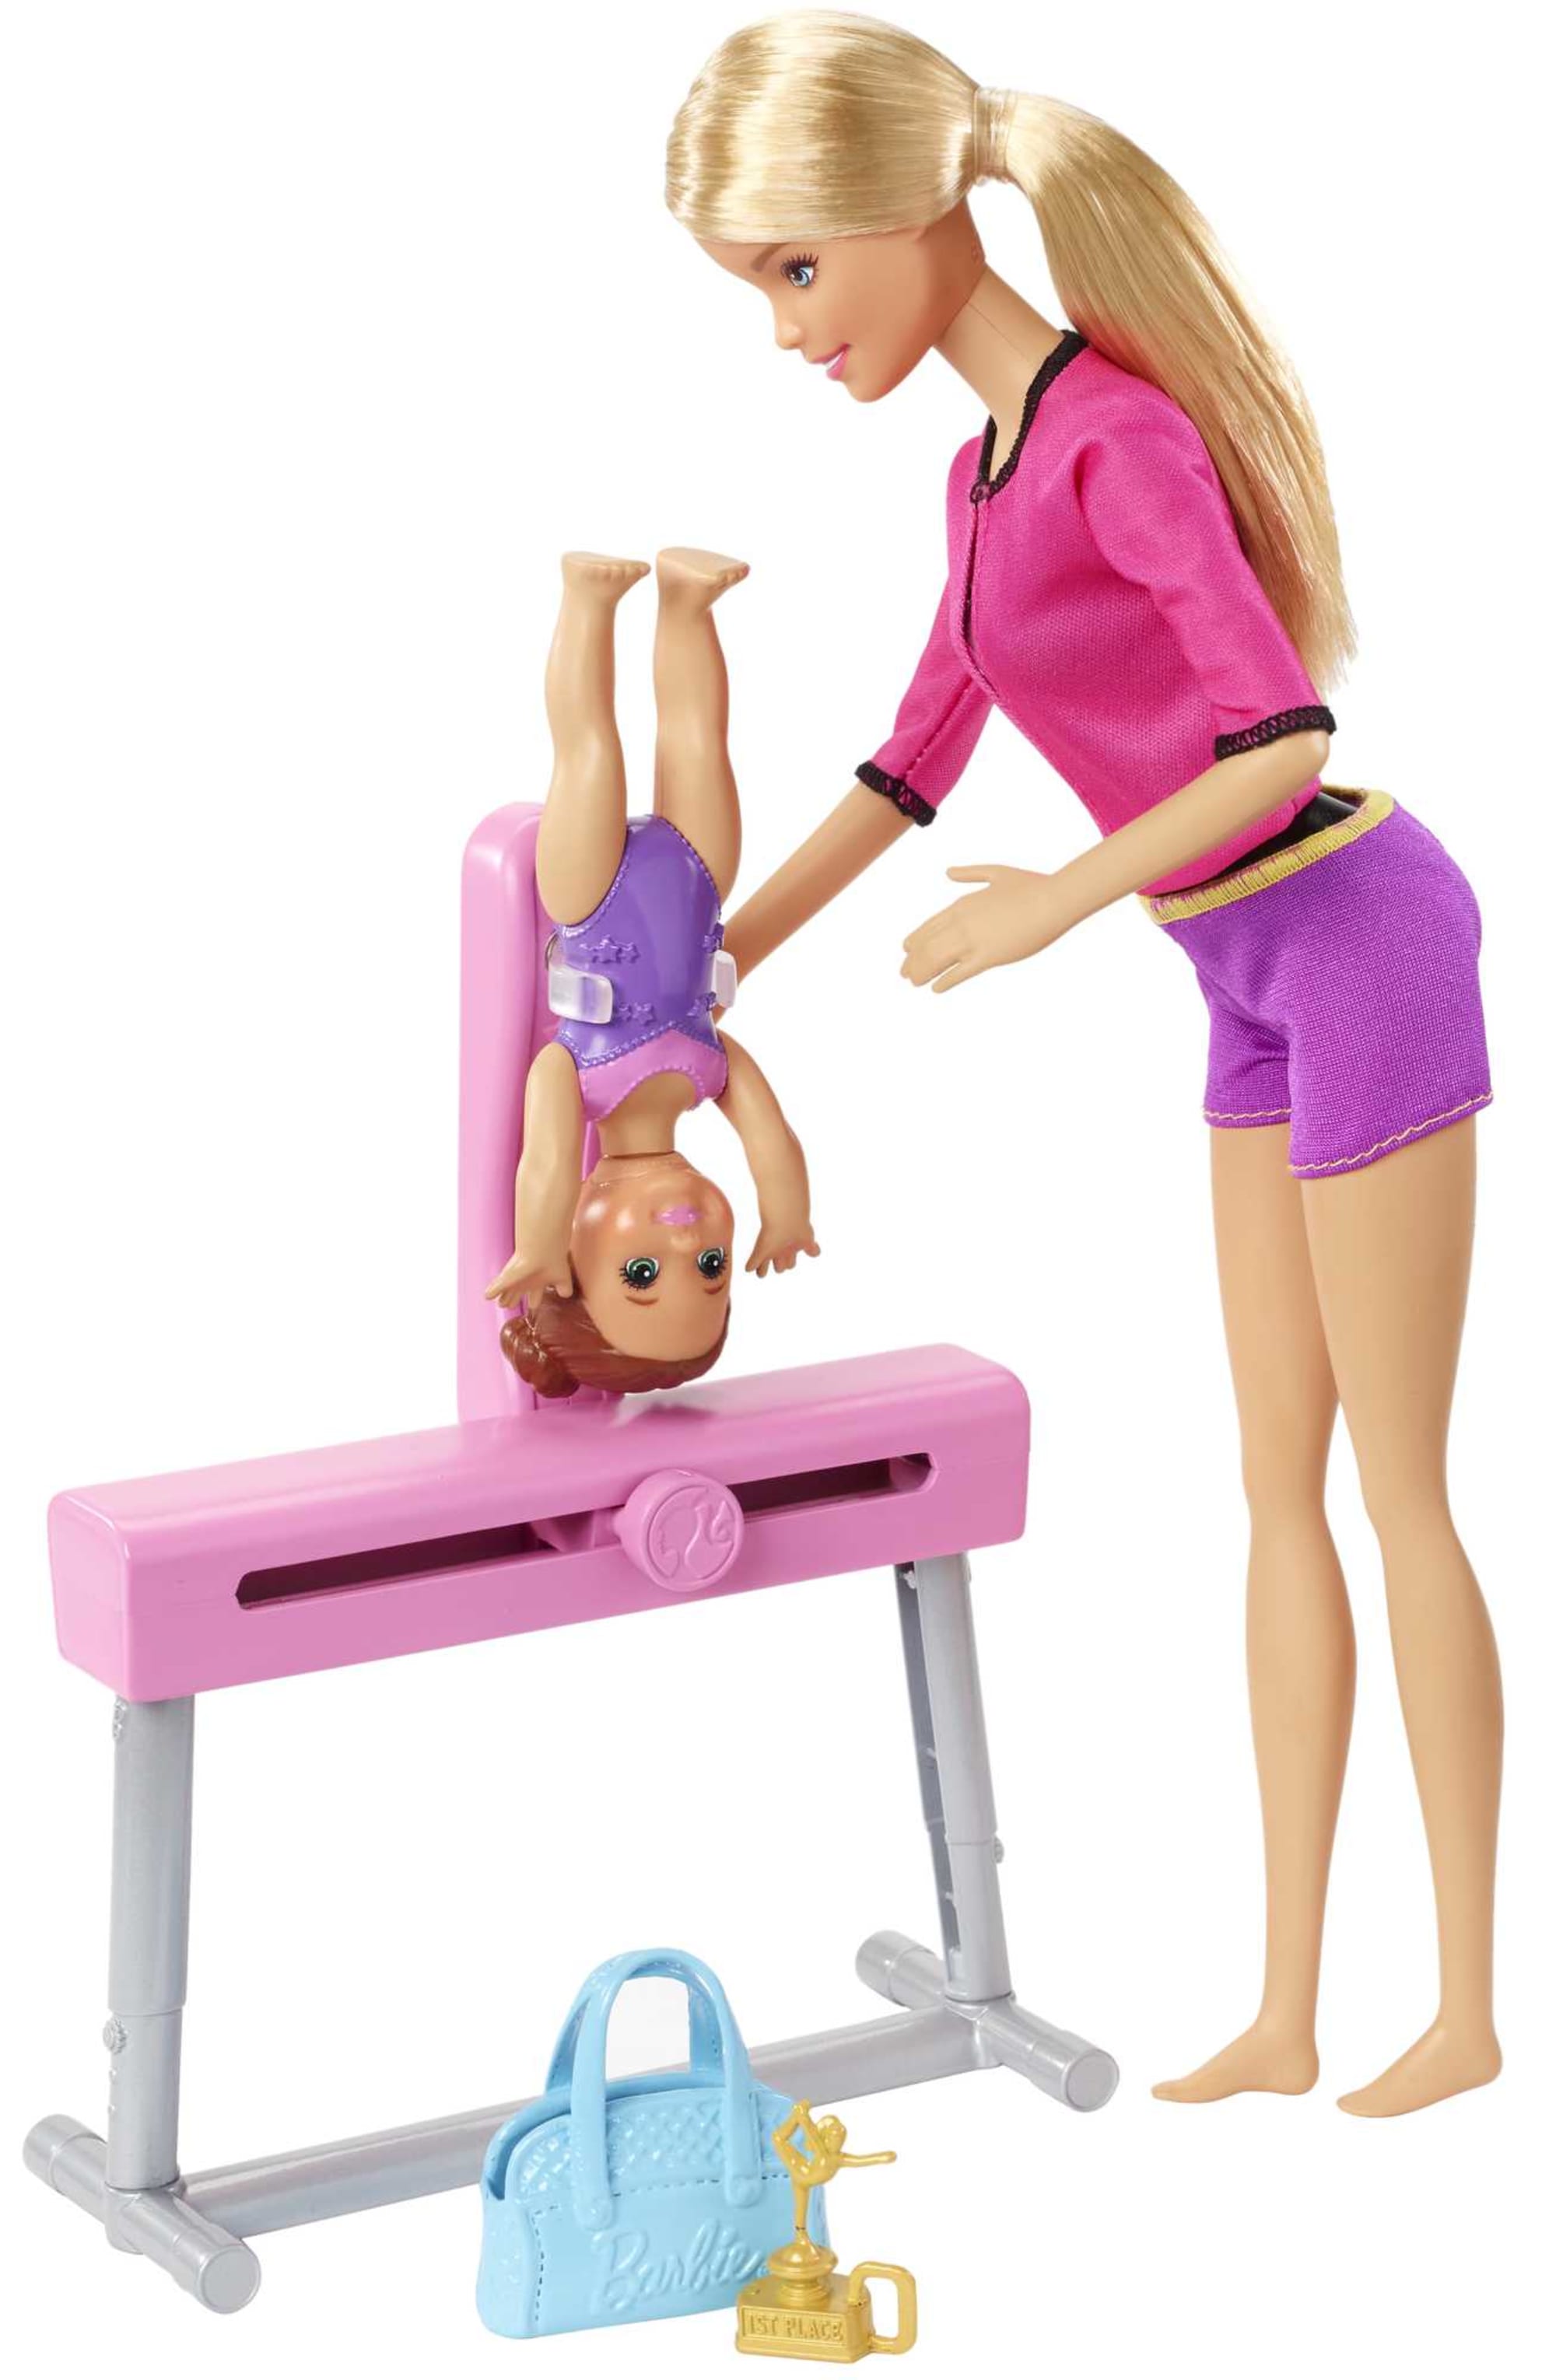 Barbie gymnaste articulee mattel - Mattel Games